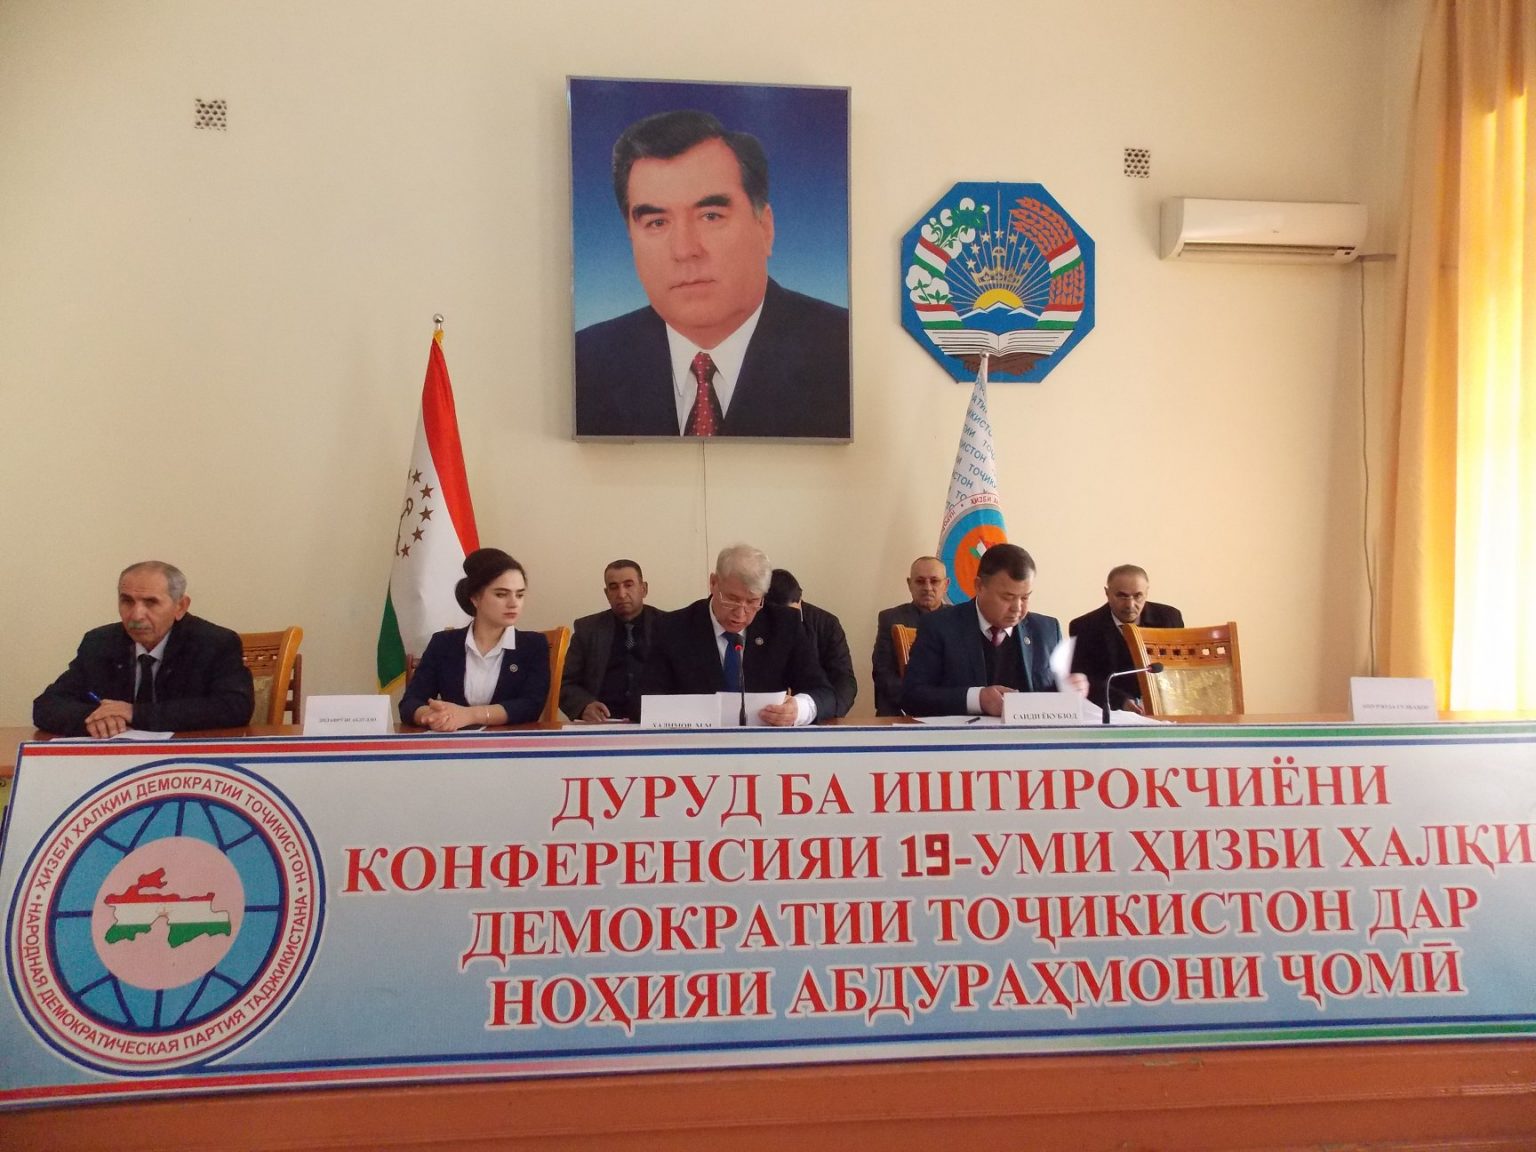 Народно-Демократическая партия Таджикистана. СМИ В Таджикистане. Демократическая партия Таджикистана. Таджикские сми